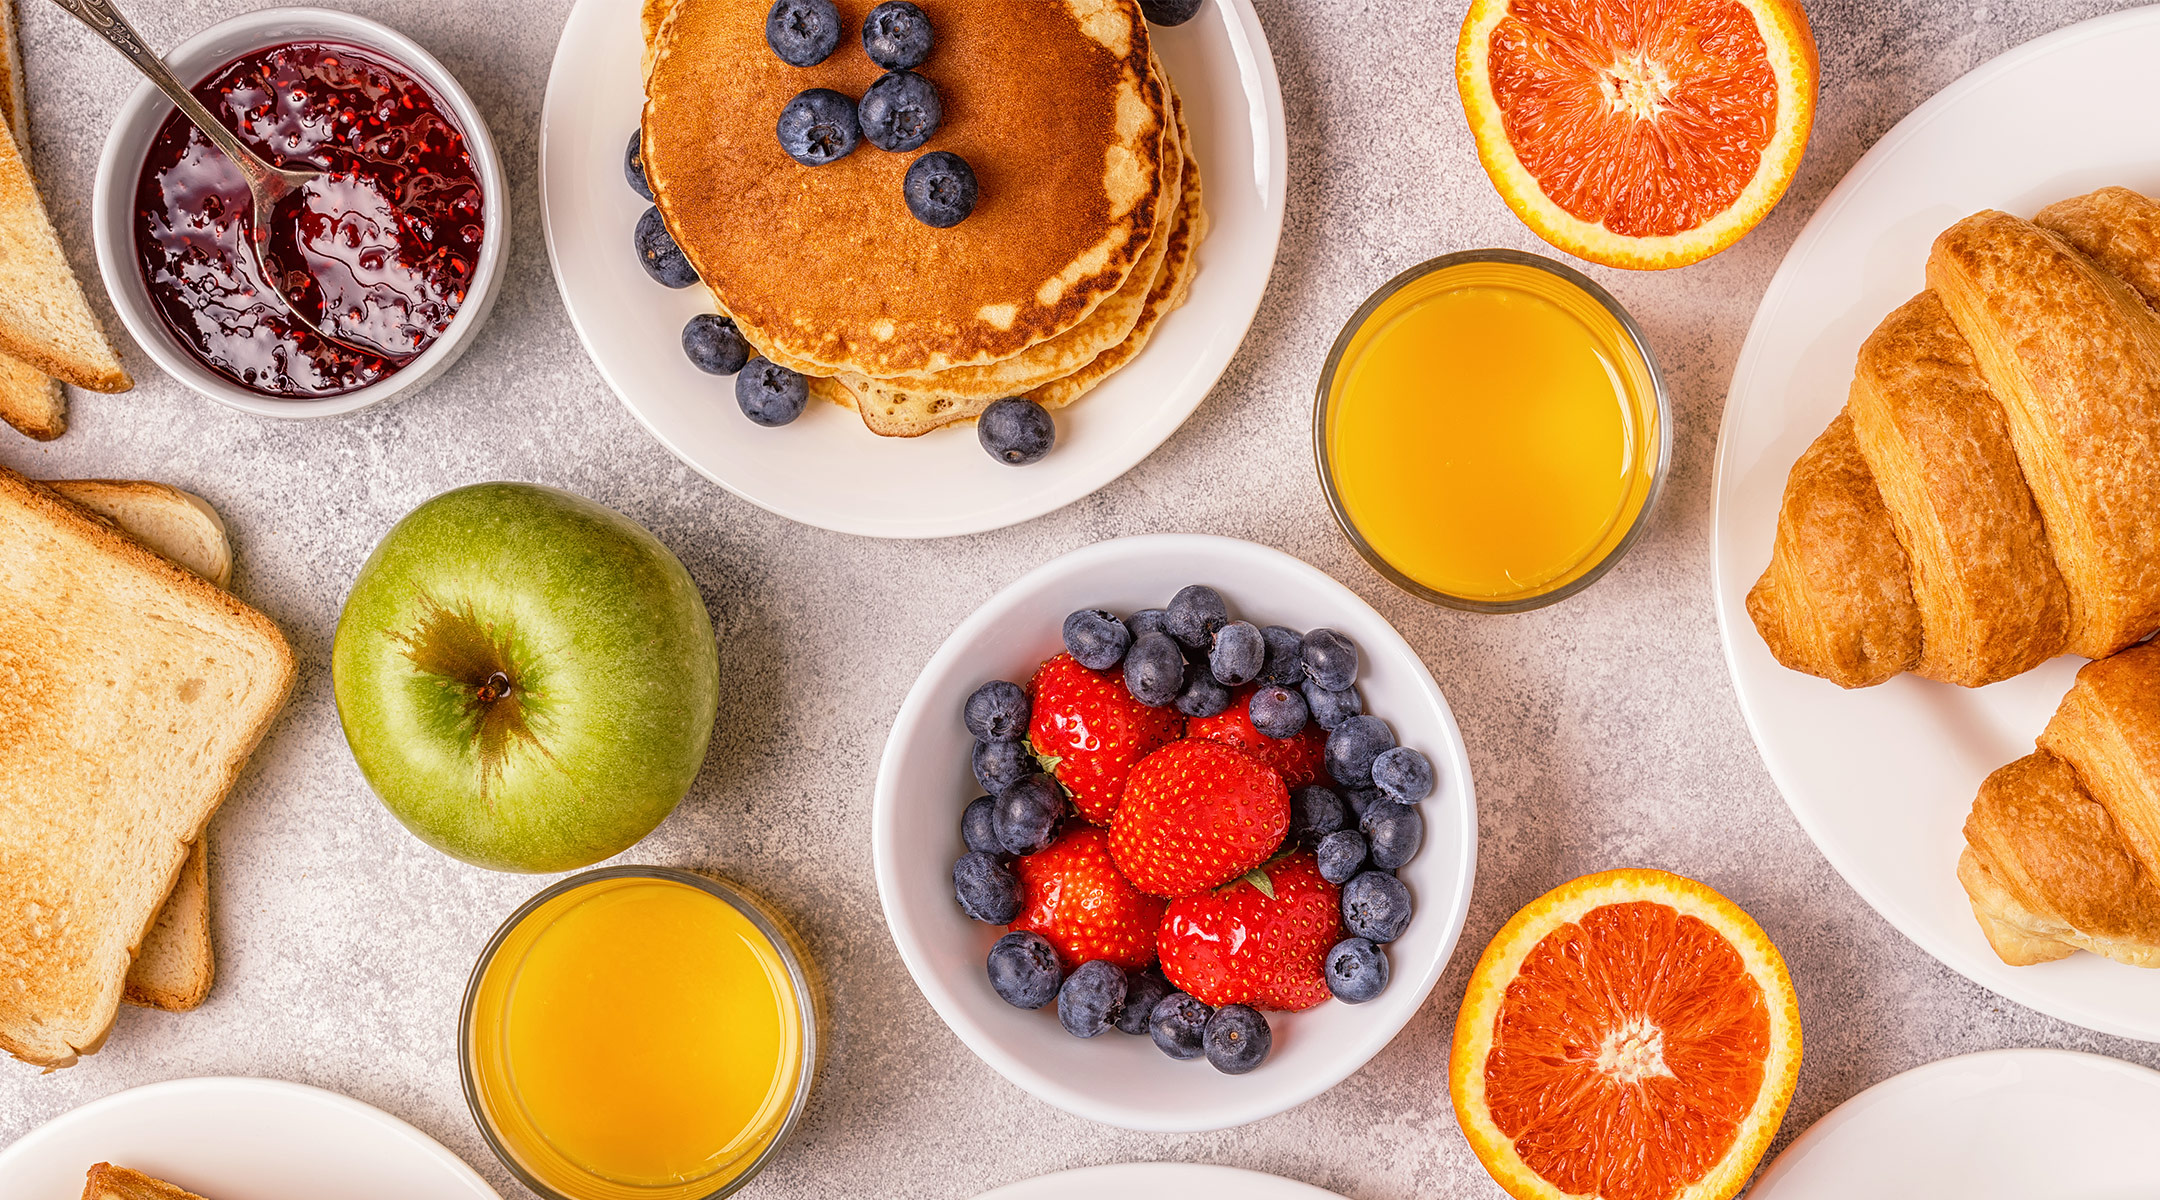 breakfast food spread including croissants, fruit, toast, and orange juice